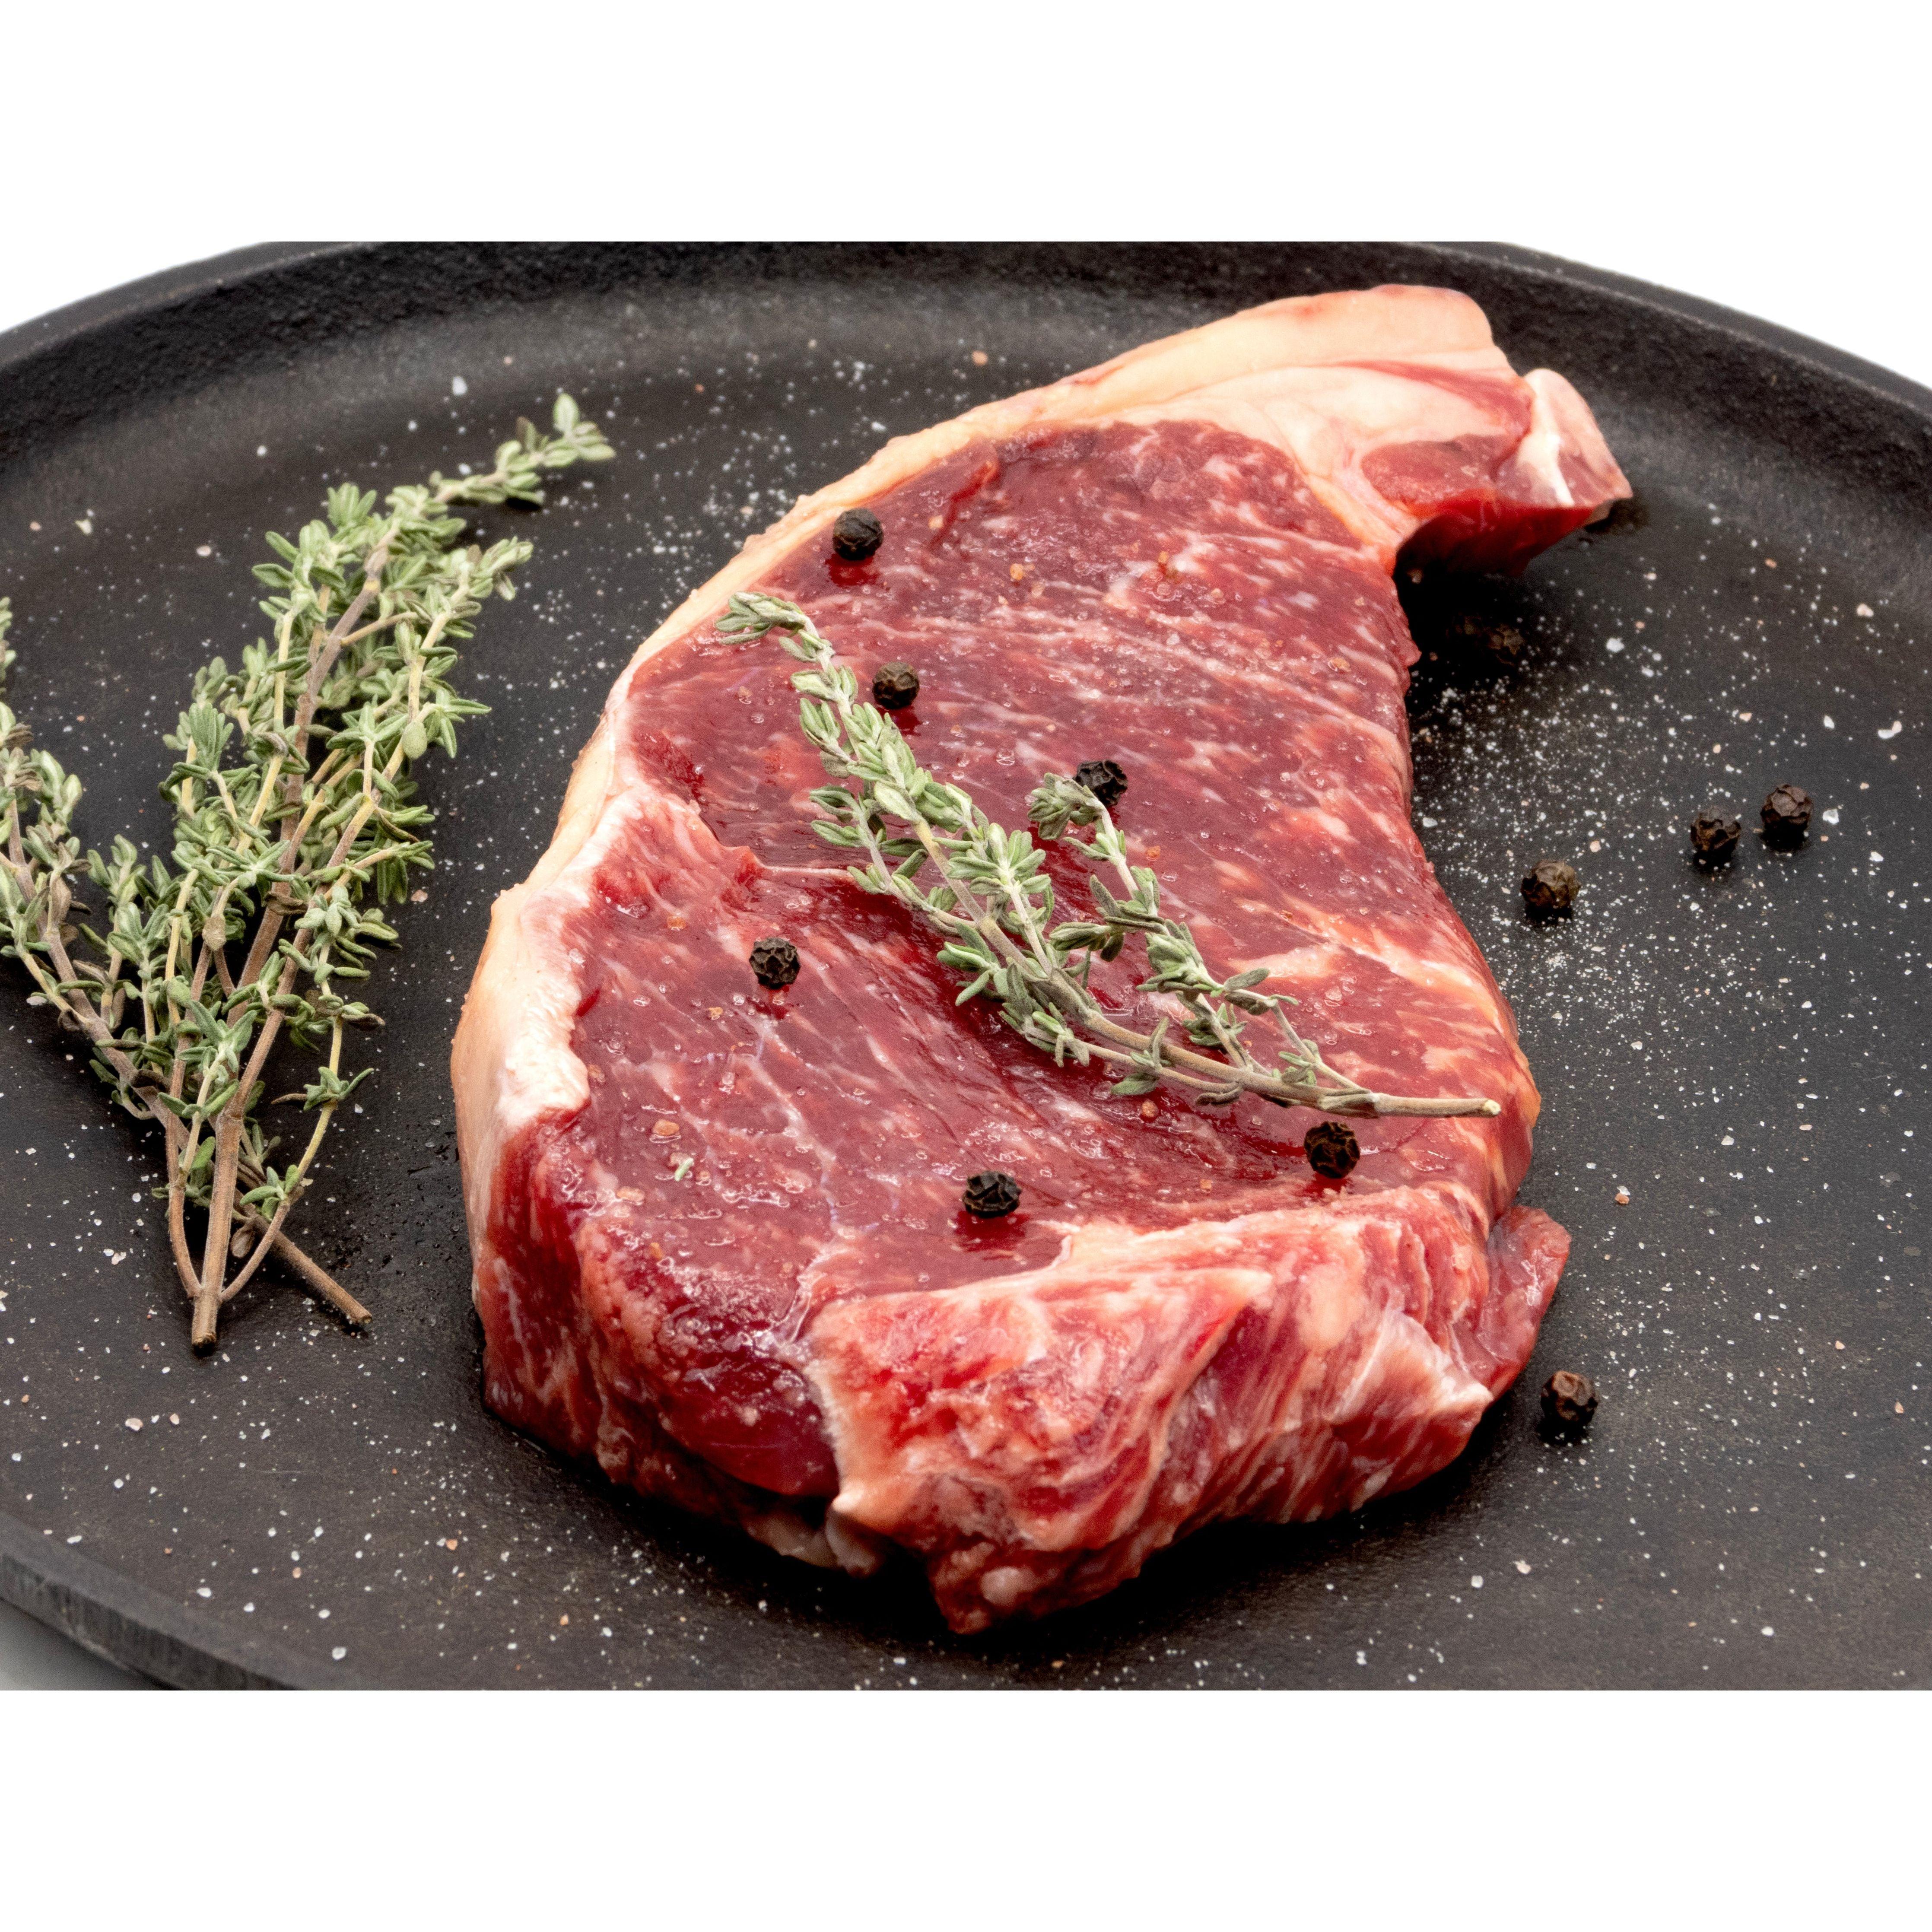 100% Grassfed Wagyu Beef NY Strip Steak - Nutrient Farm